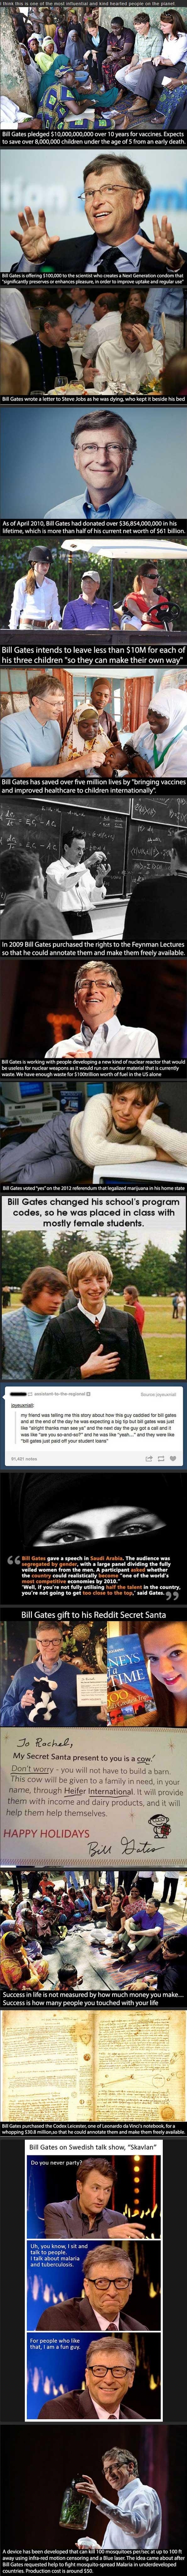 Bill Gates is pretty amazing.